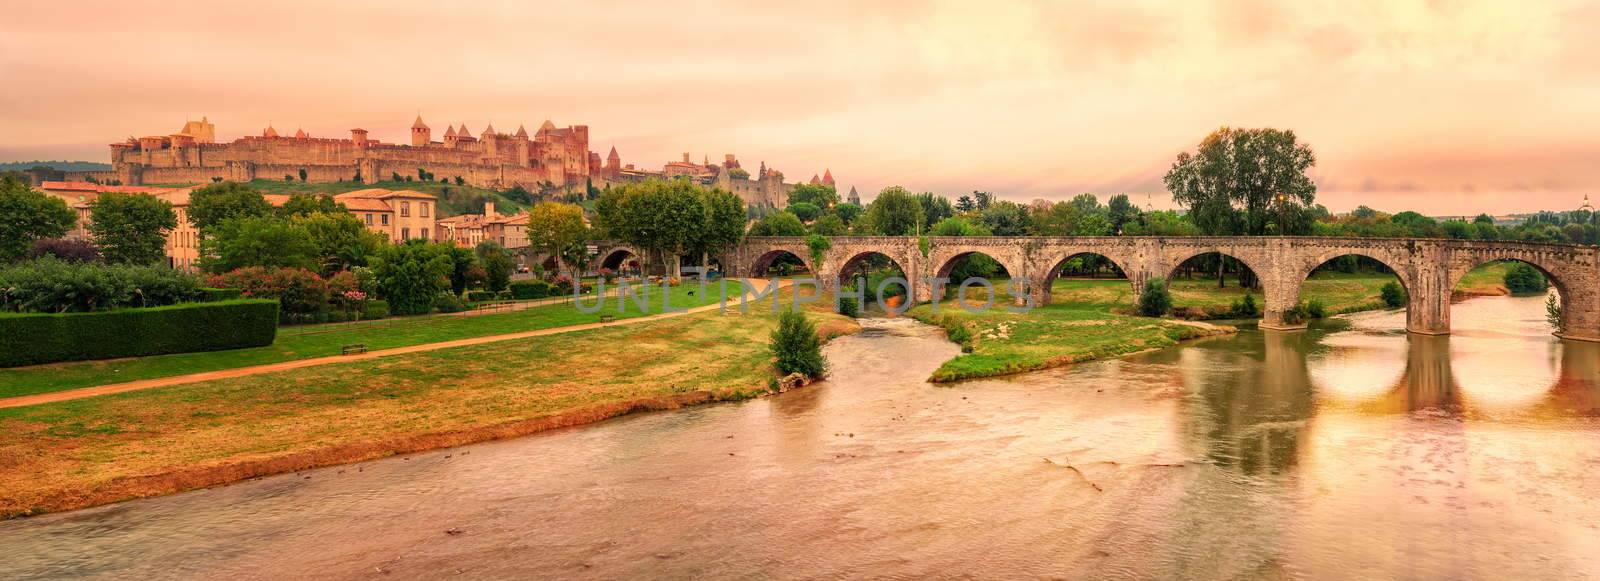 Cite de Carcassonne, Languedoc-Roussillon, France by GlobePhotos